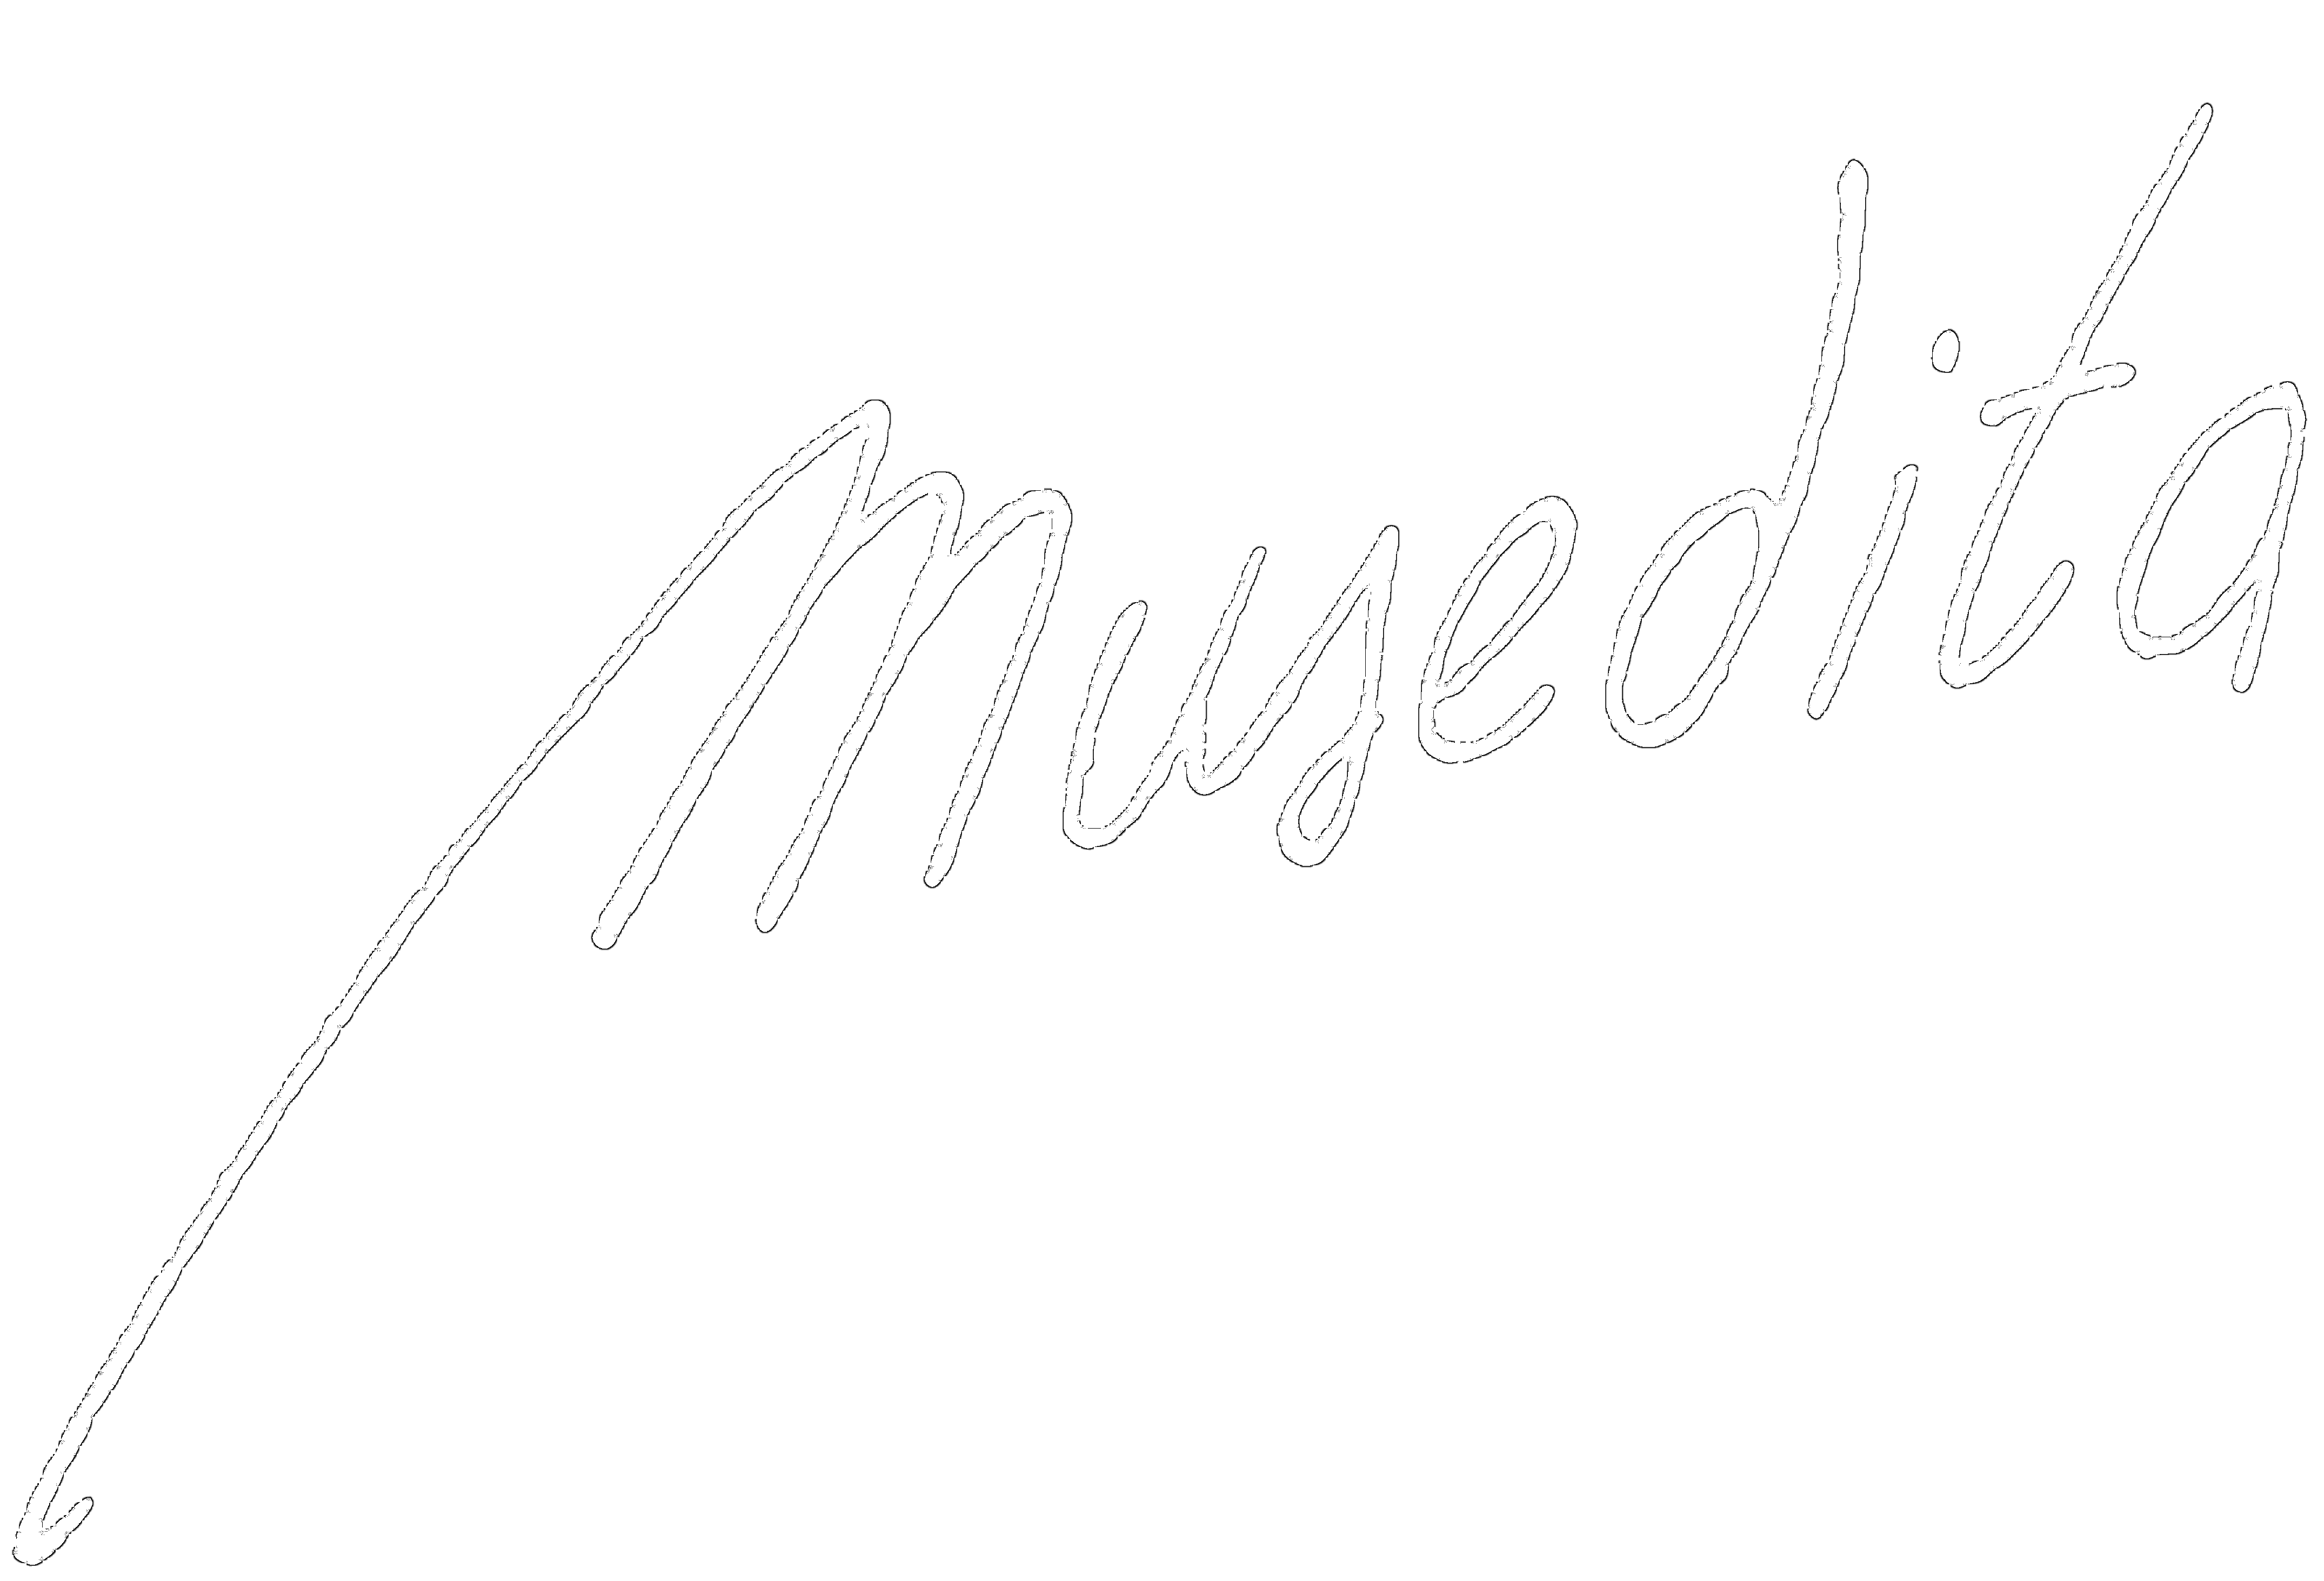 Musedita - Music Publishing House